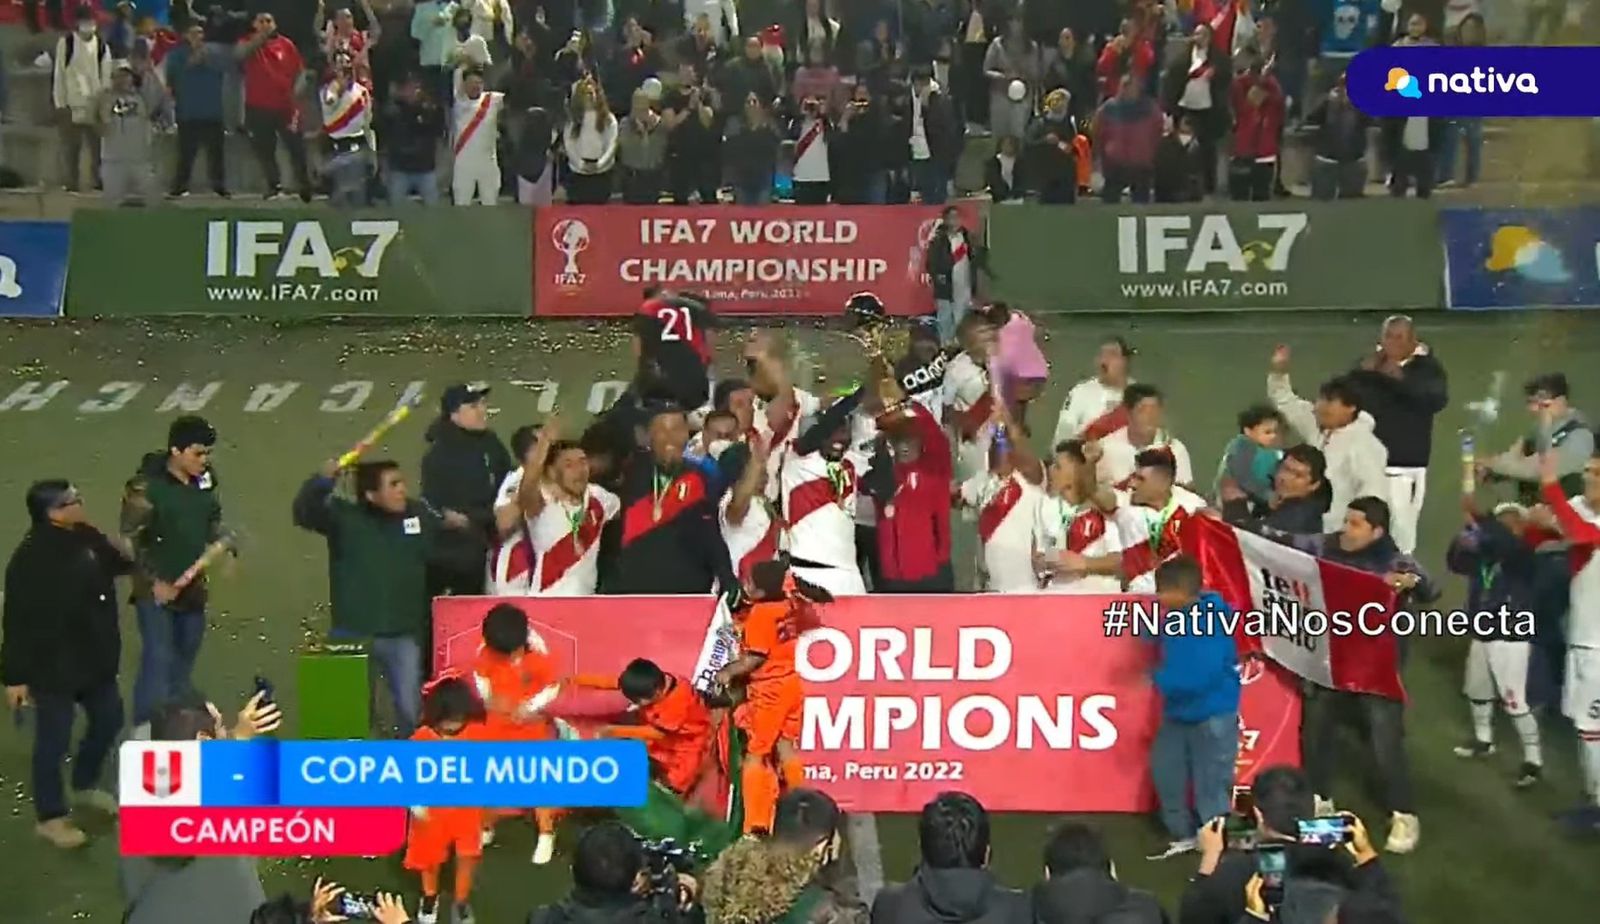 La Selección Peruana de Fútbol 7 se consagró campeón del Mundial IFA7